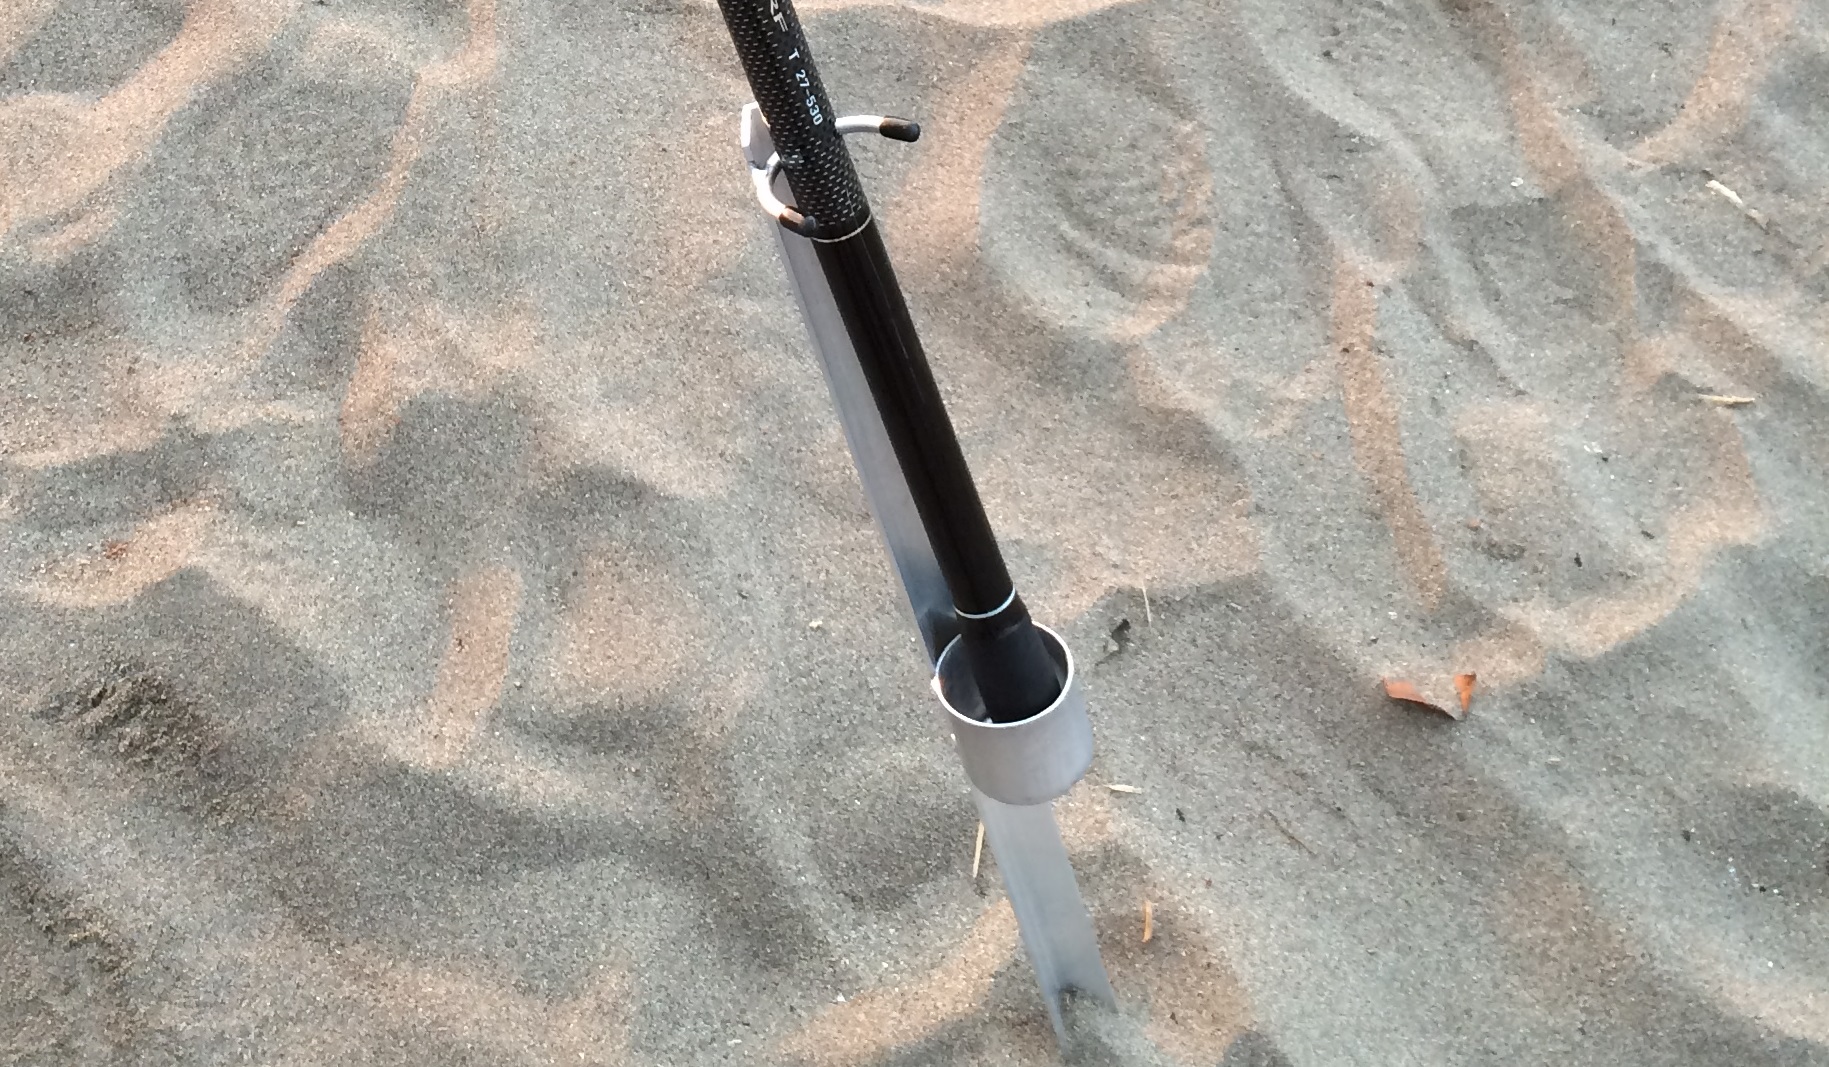 竿受け 砂浜での置き竿に便利な サーフスタンド がおすすめ Red Wave